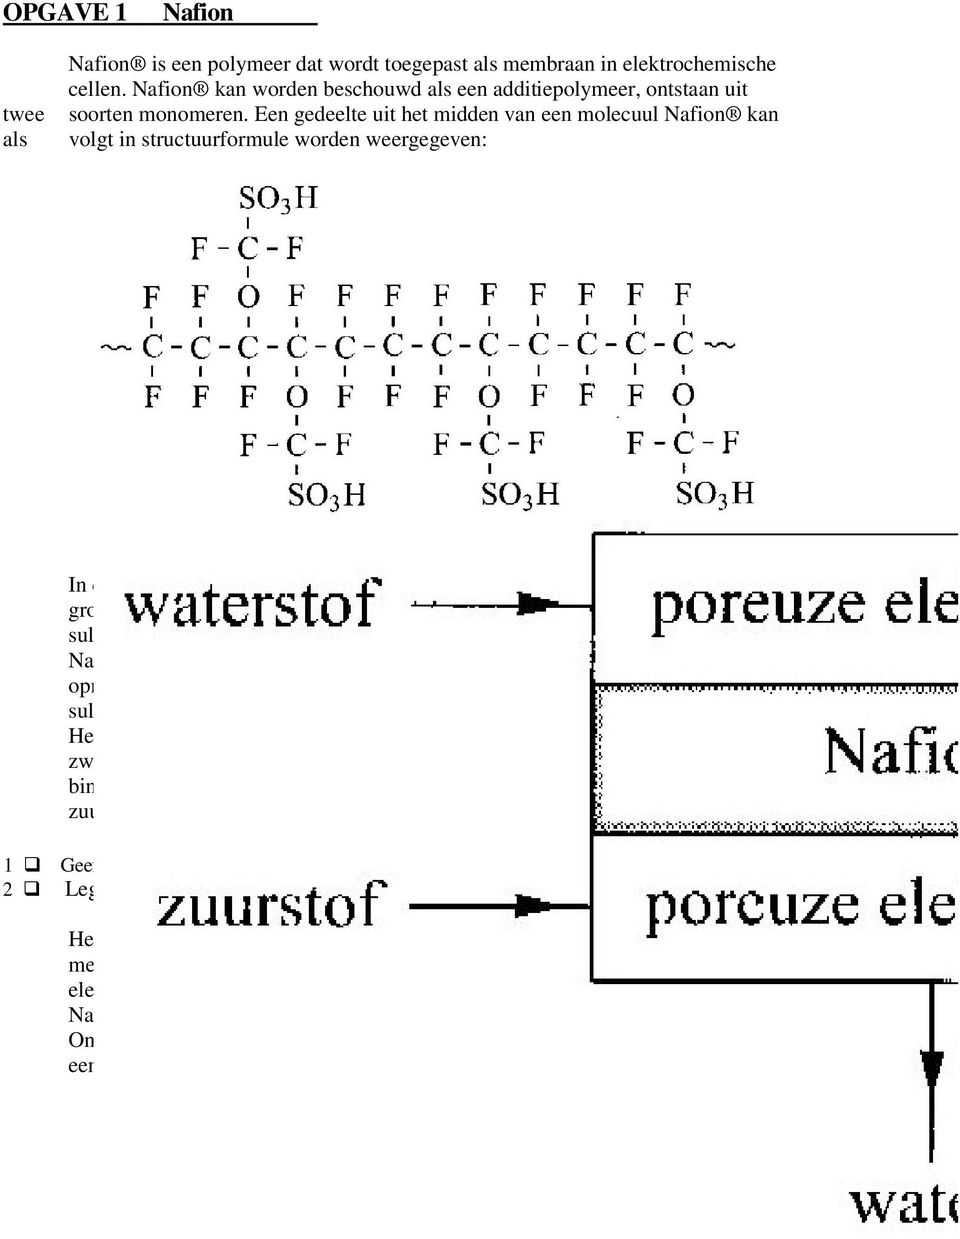 De groepen die in bovenstaande structuurformule met-so3h zijn aangeduid, worden sulfonzuurgroepen genoemd. Nafion is een sterk hygroscopische stof. Dat wil zeggen dat het veel water kan opnemen.